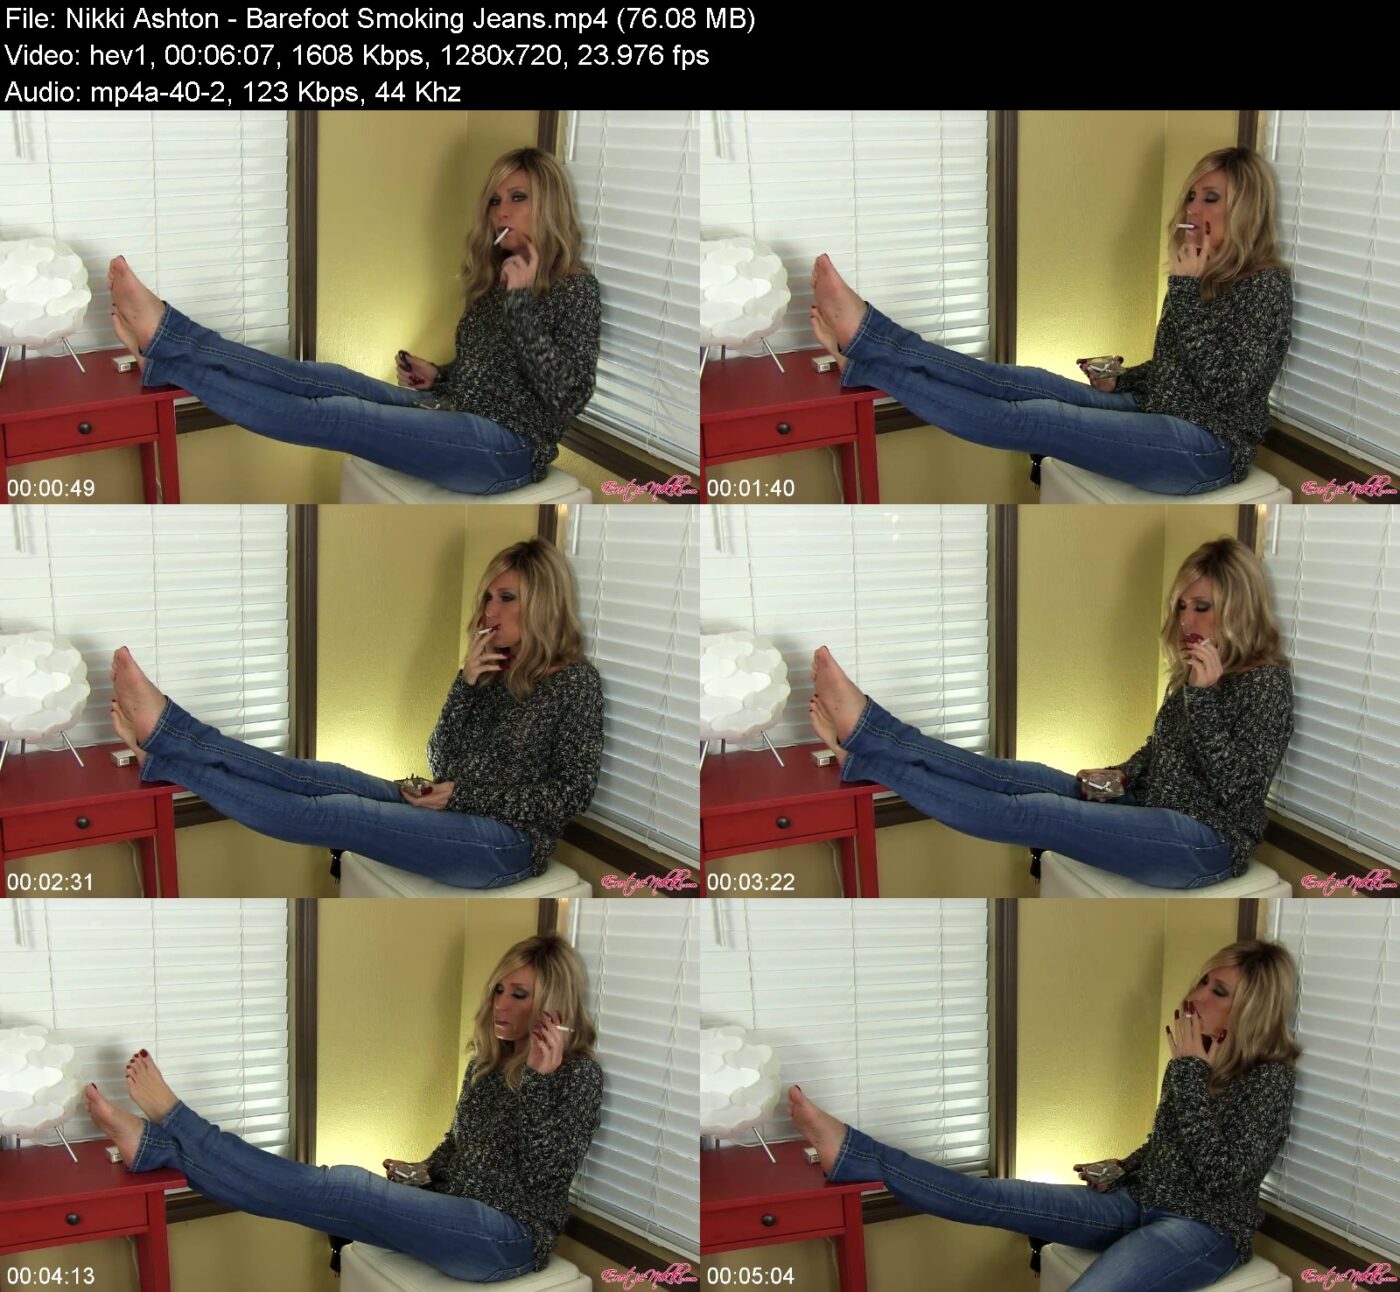 Nikki Ashton in Barefoot Smoking Jeans